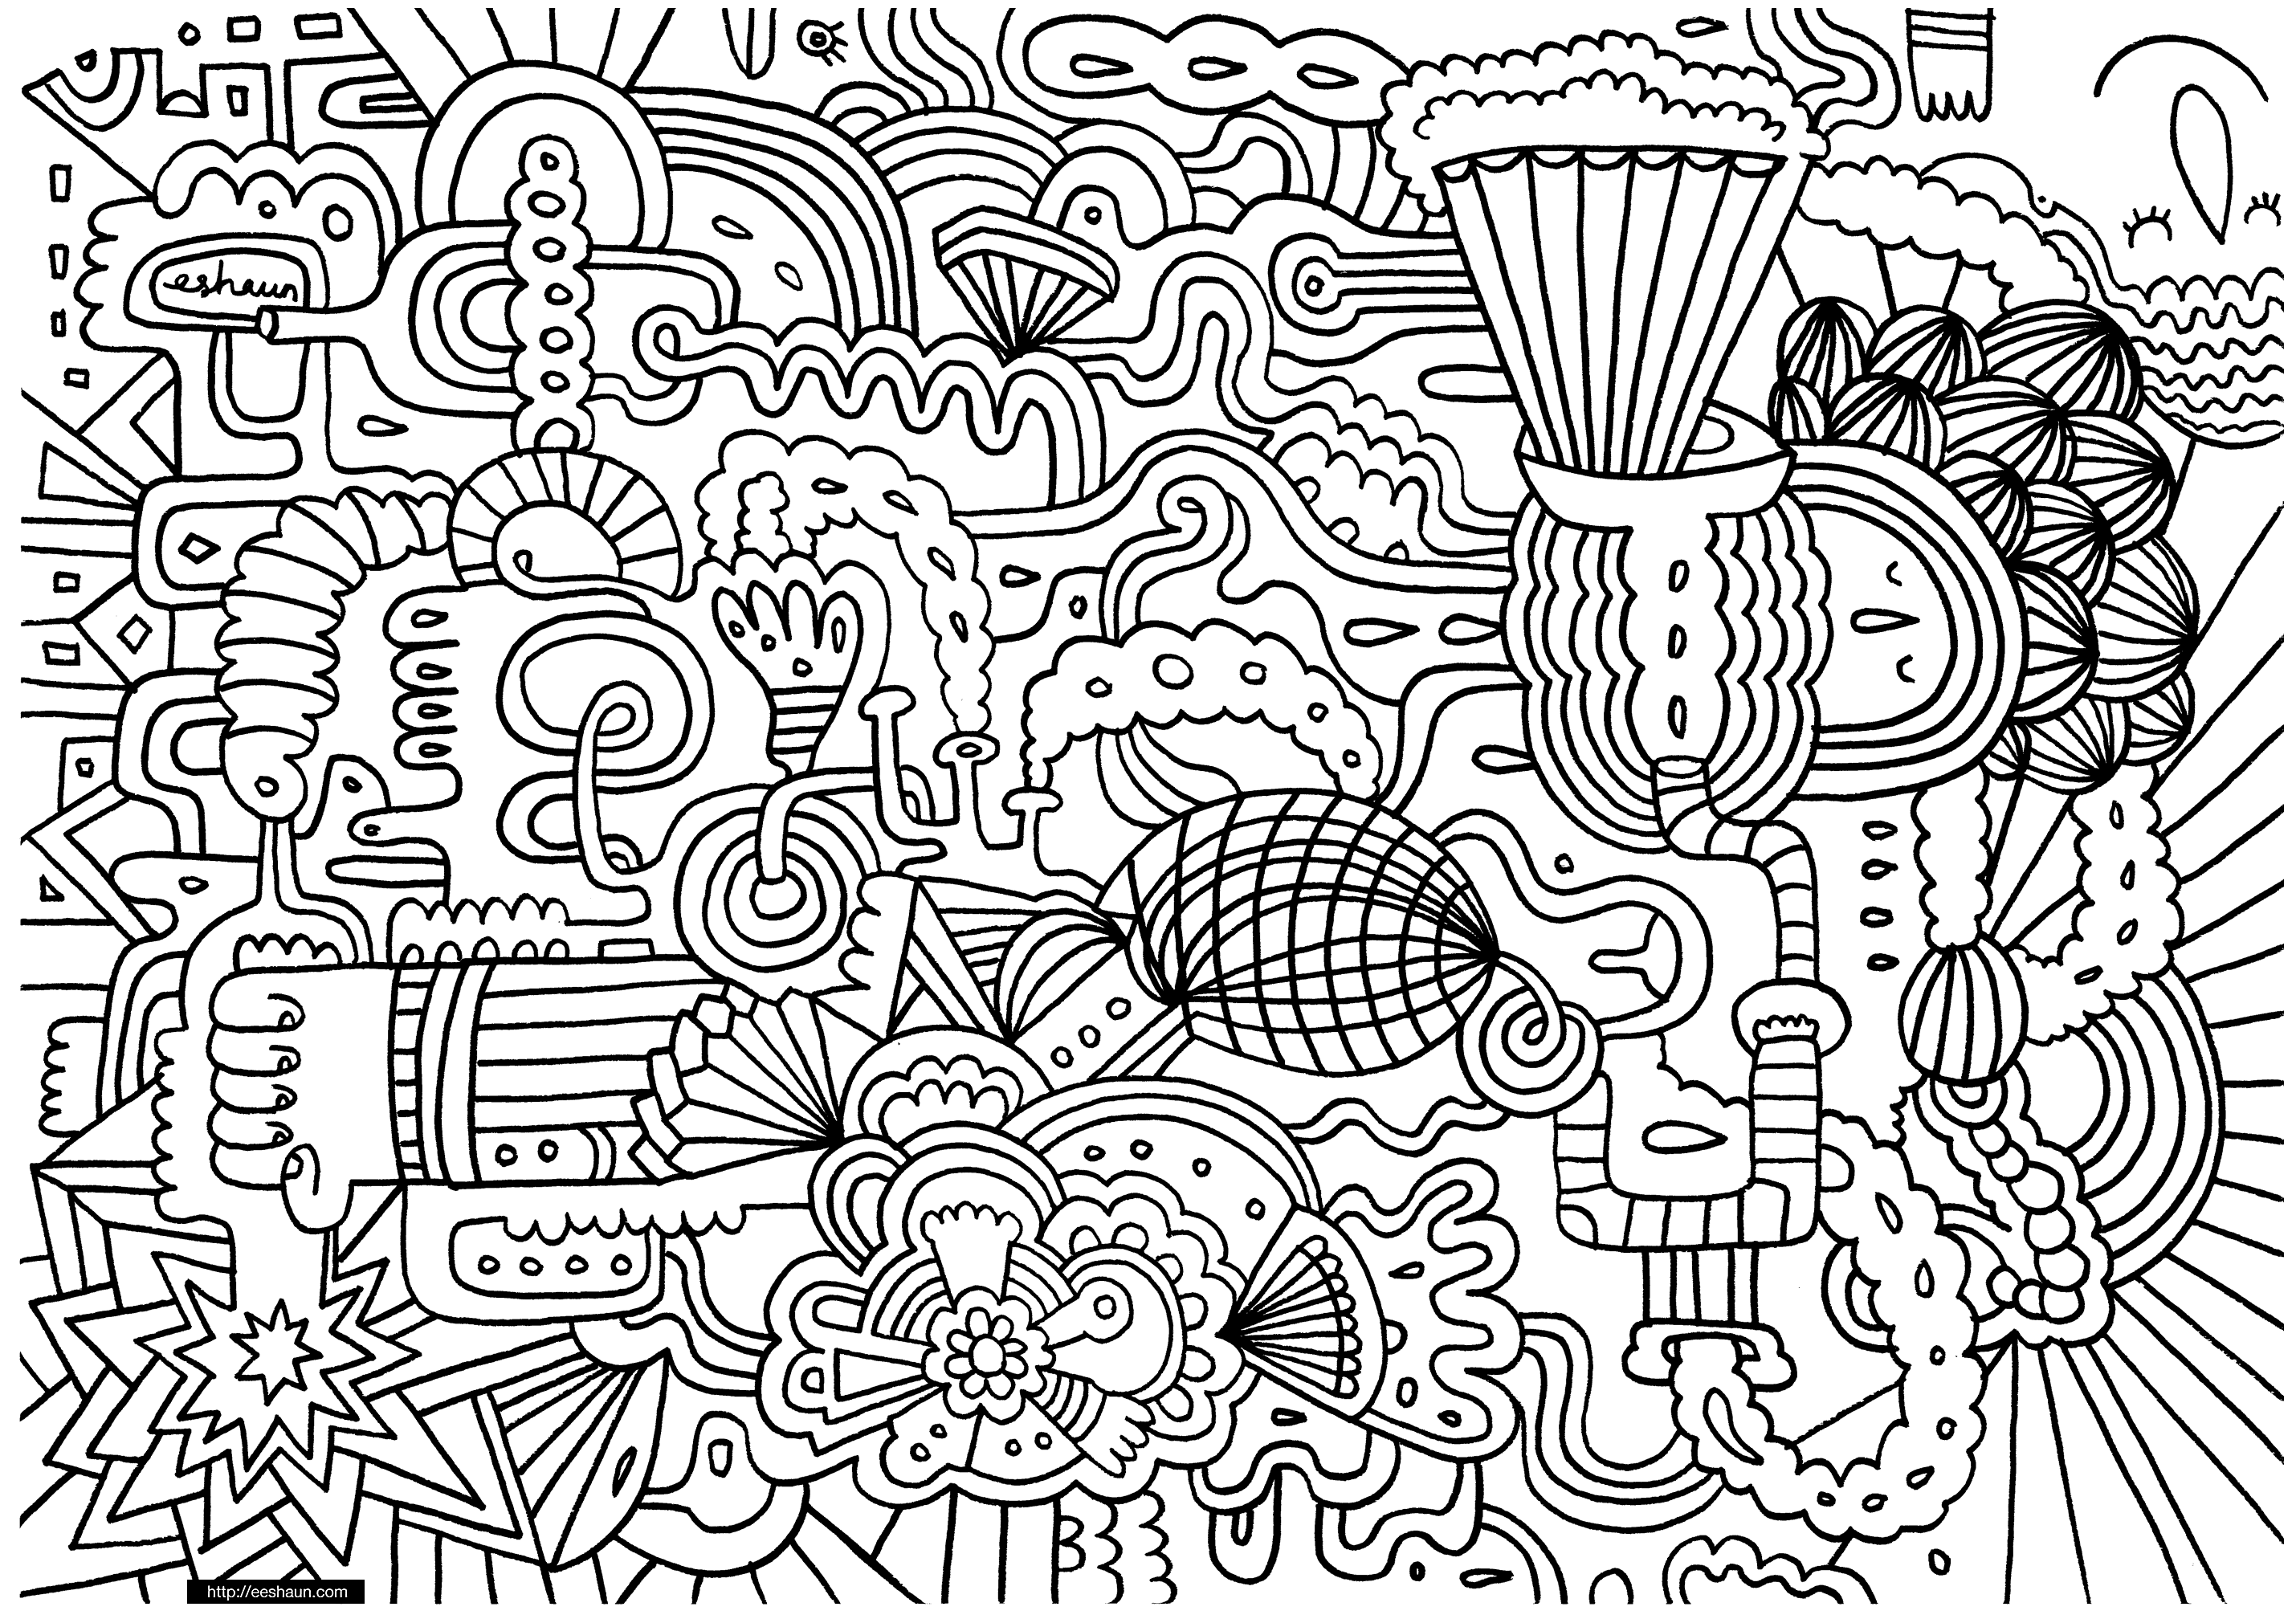 Doodling gribouillage doodle art - 1